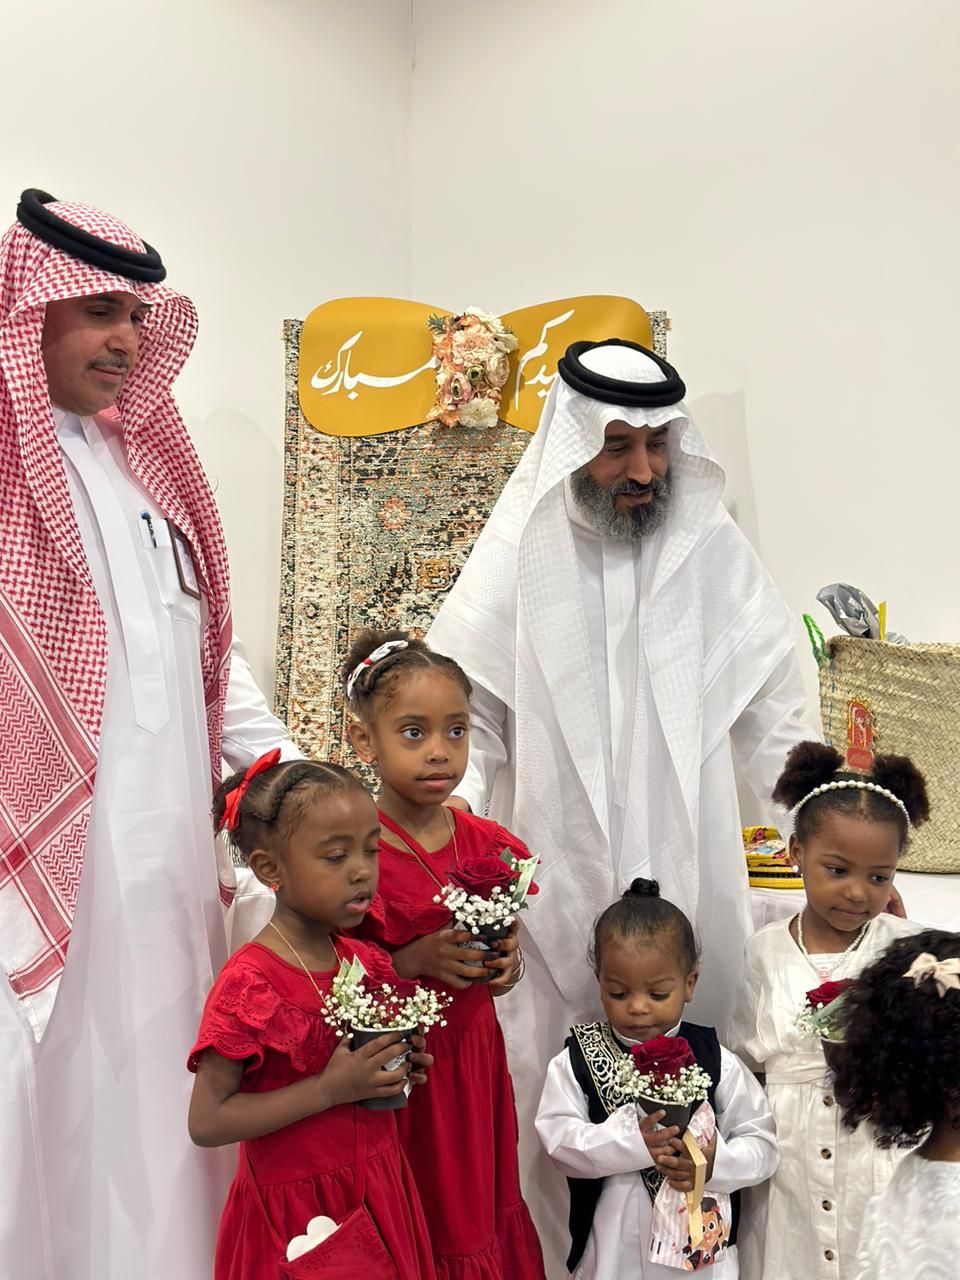 مكتب العمل بالدمام يحتفل بعيد الفطر المبارك بمشاركة أبناء وبنات دار الحضانة الاجتماعية بالدمام